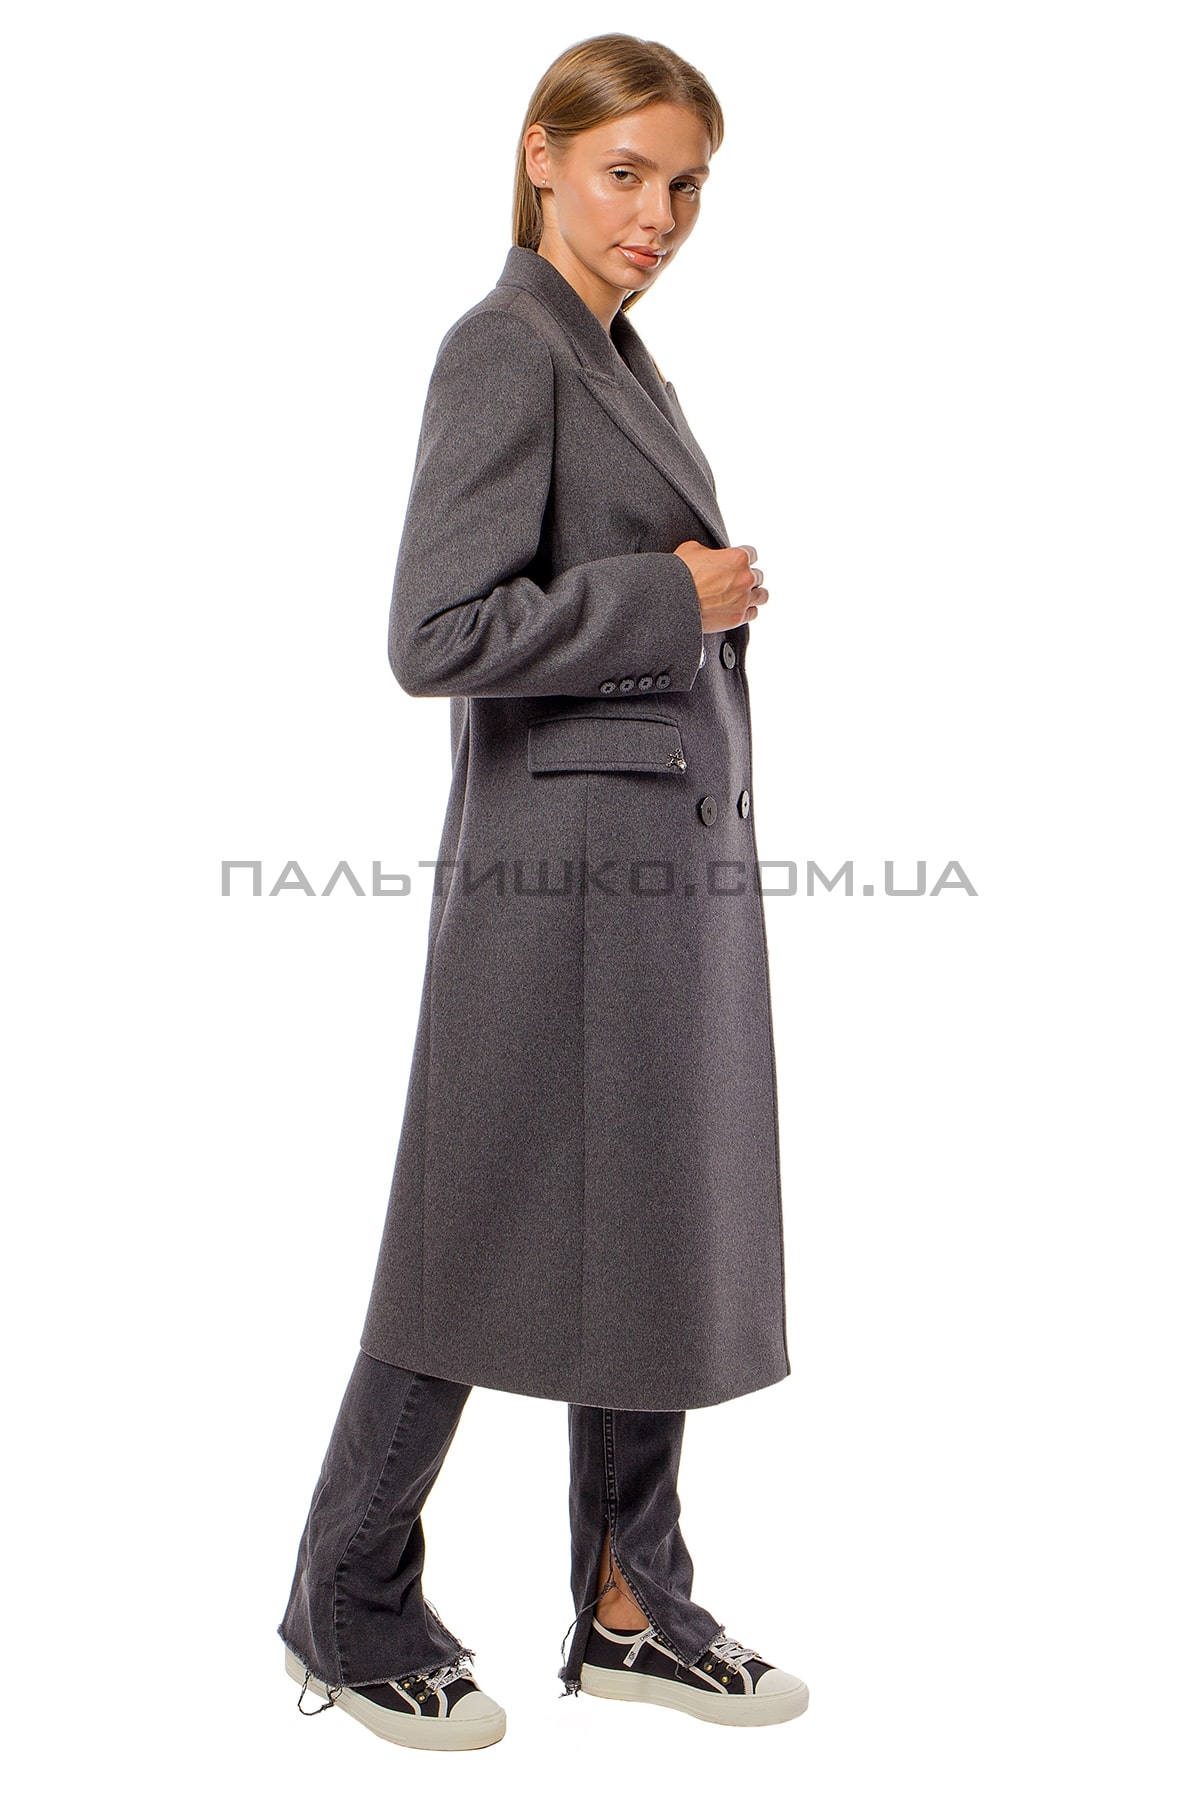  Жіноче сіре пальто